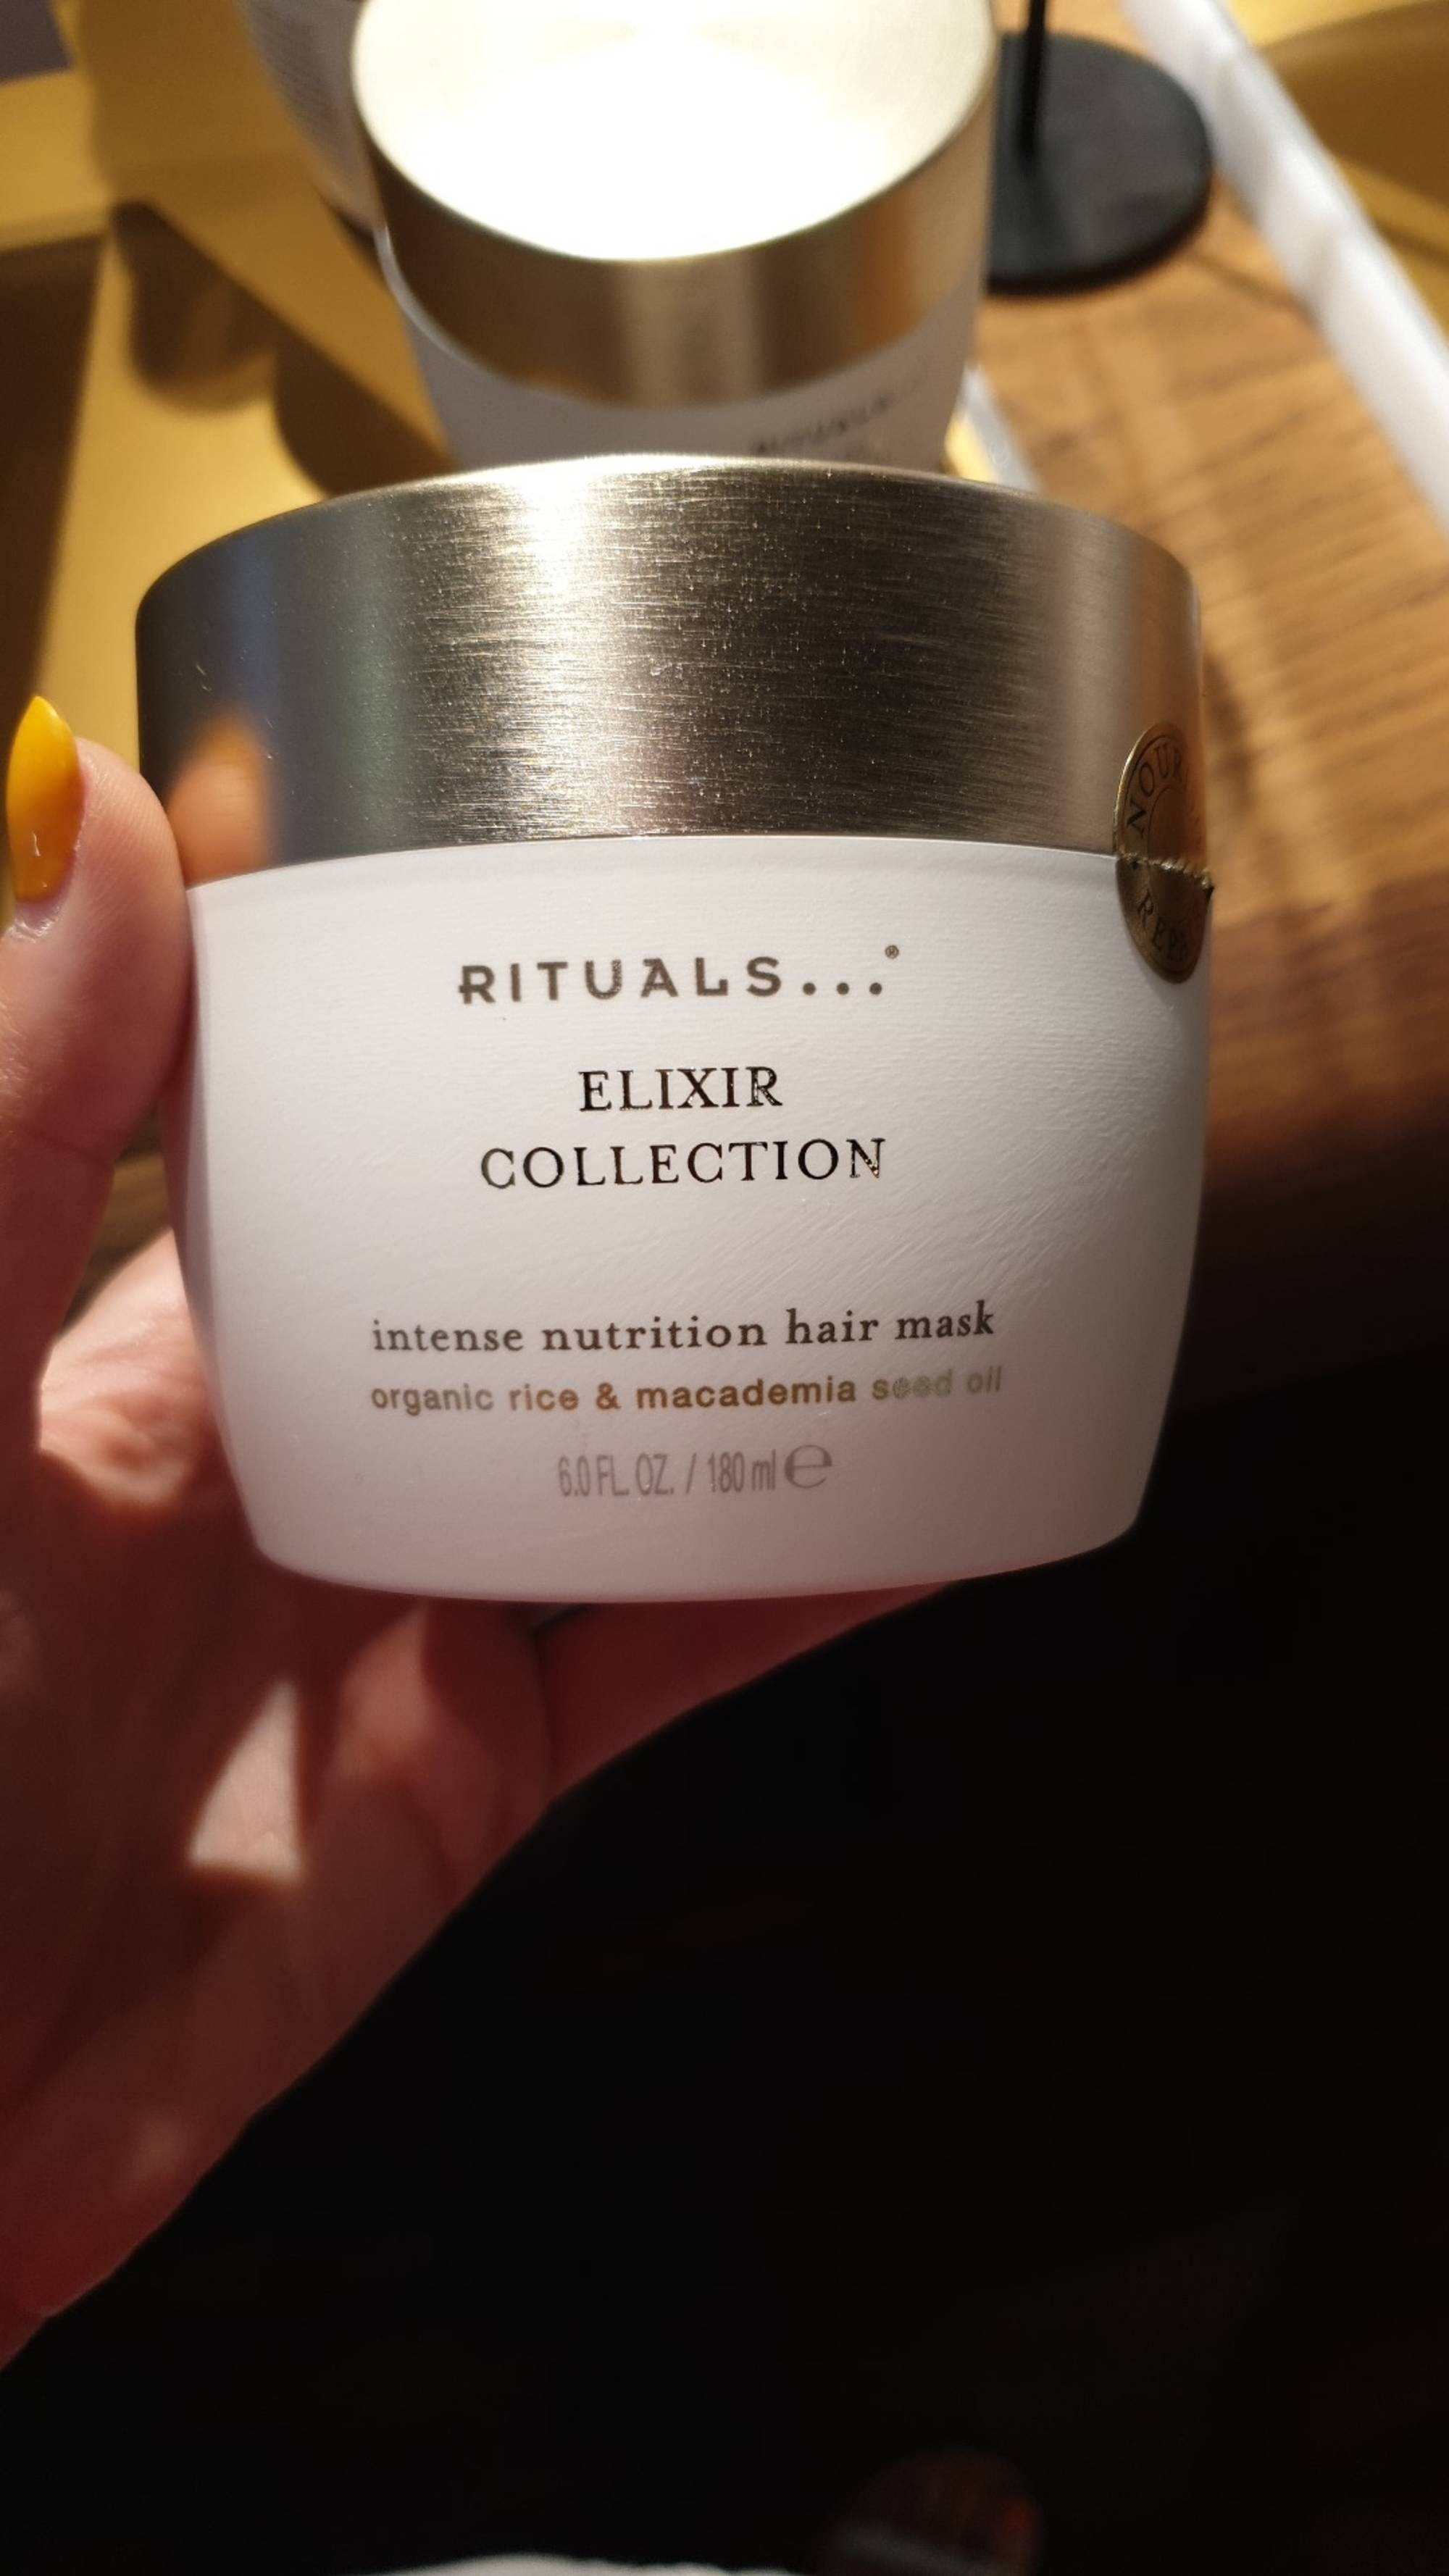 RITUALS - Elixir Collection - Intense nutrition hair mask